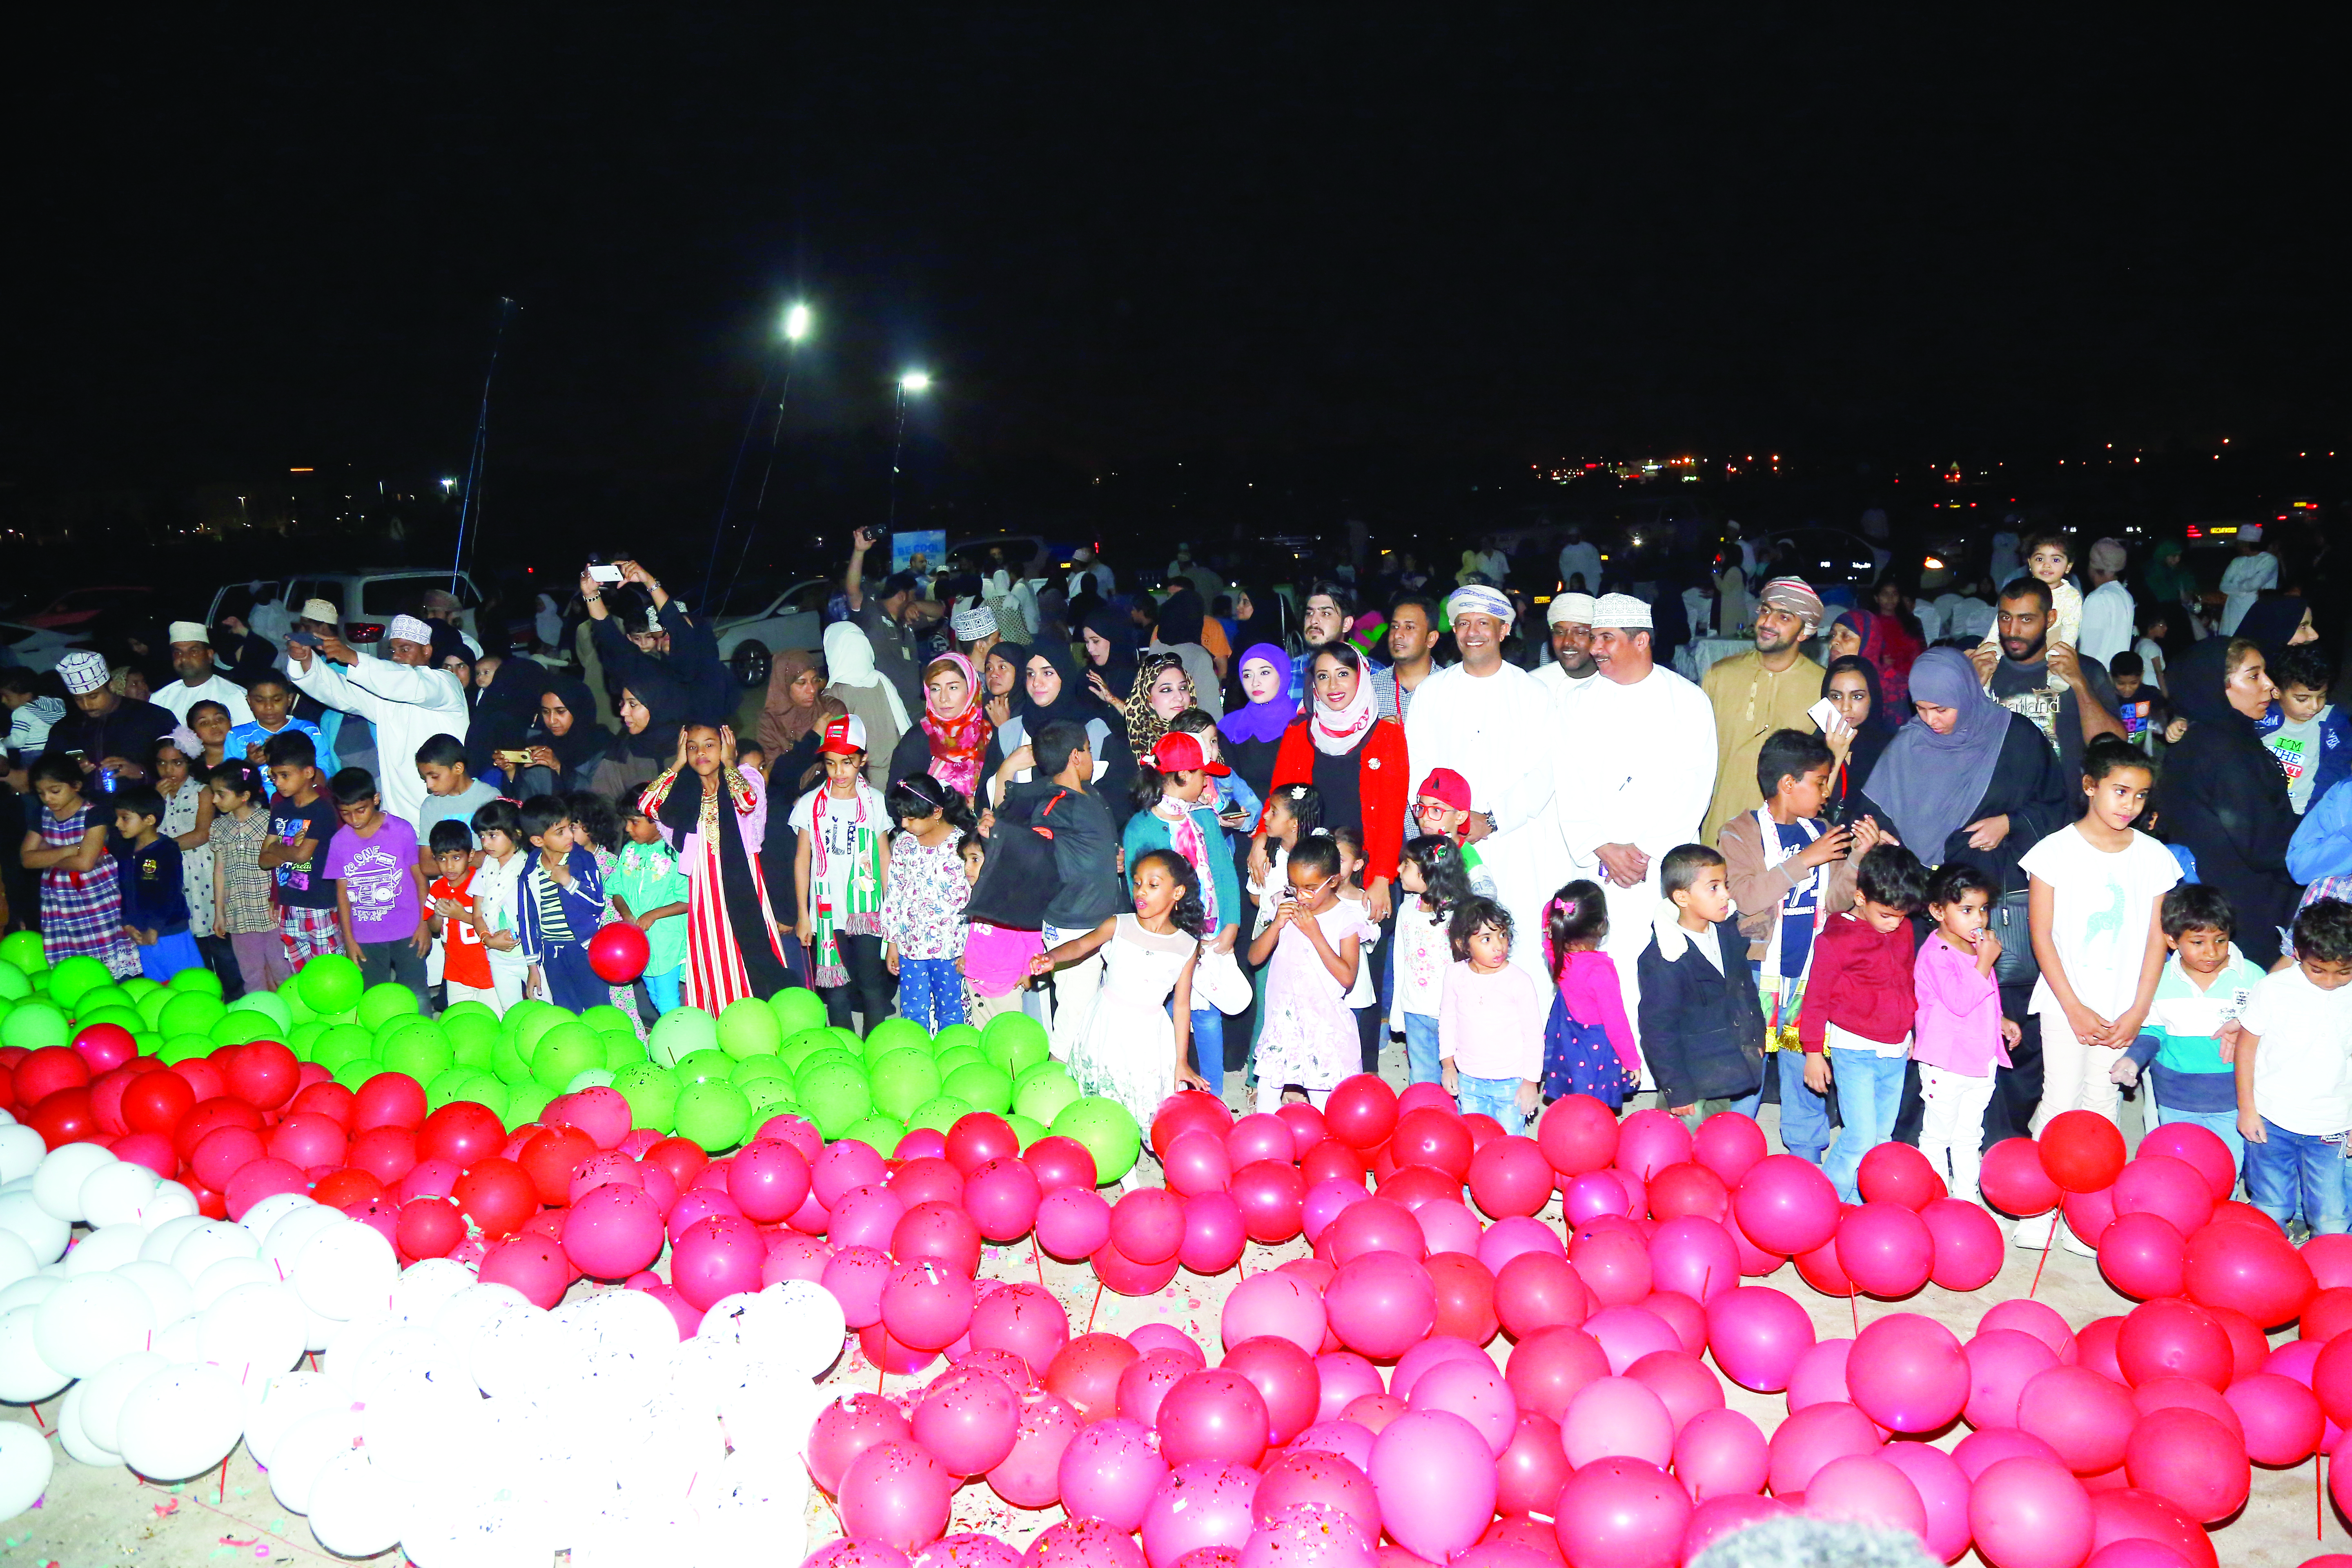 2000 بالون تضيء الشاطئ احتفالاً بالعيد